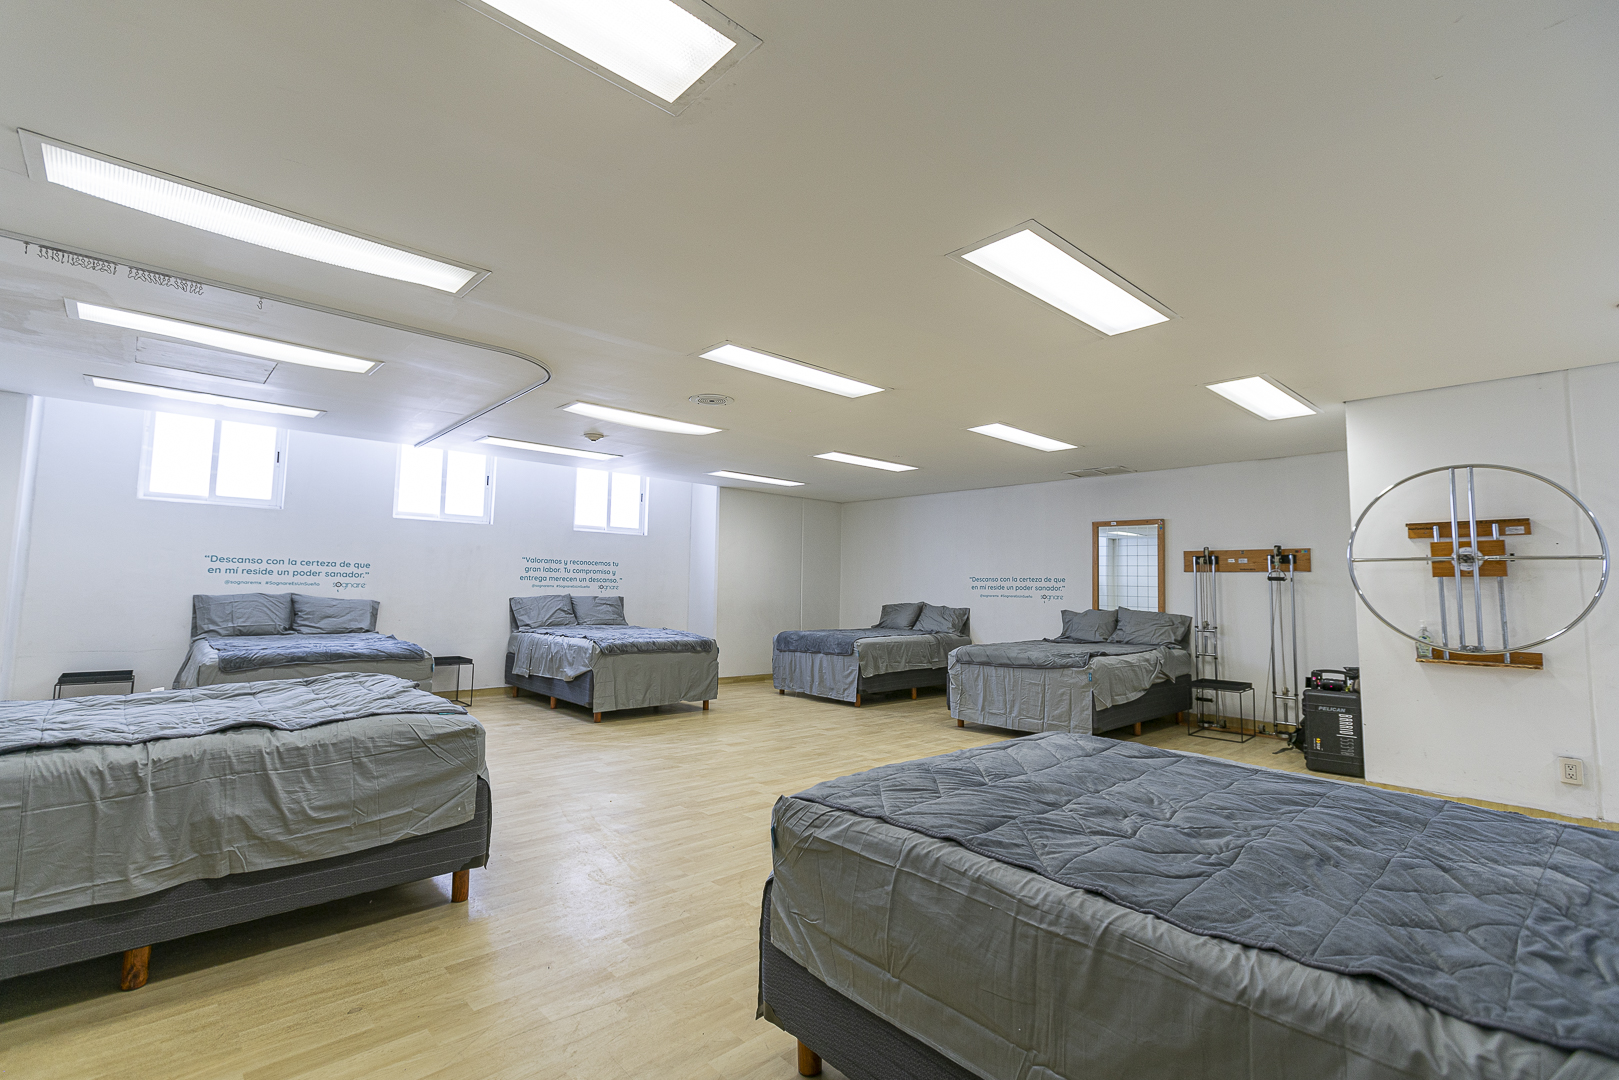 Sognare habilita salas de reposo en tres hospitales públicos